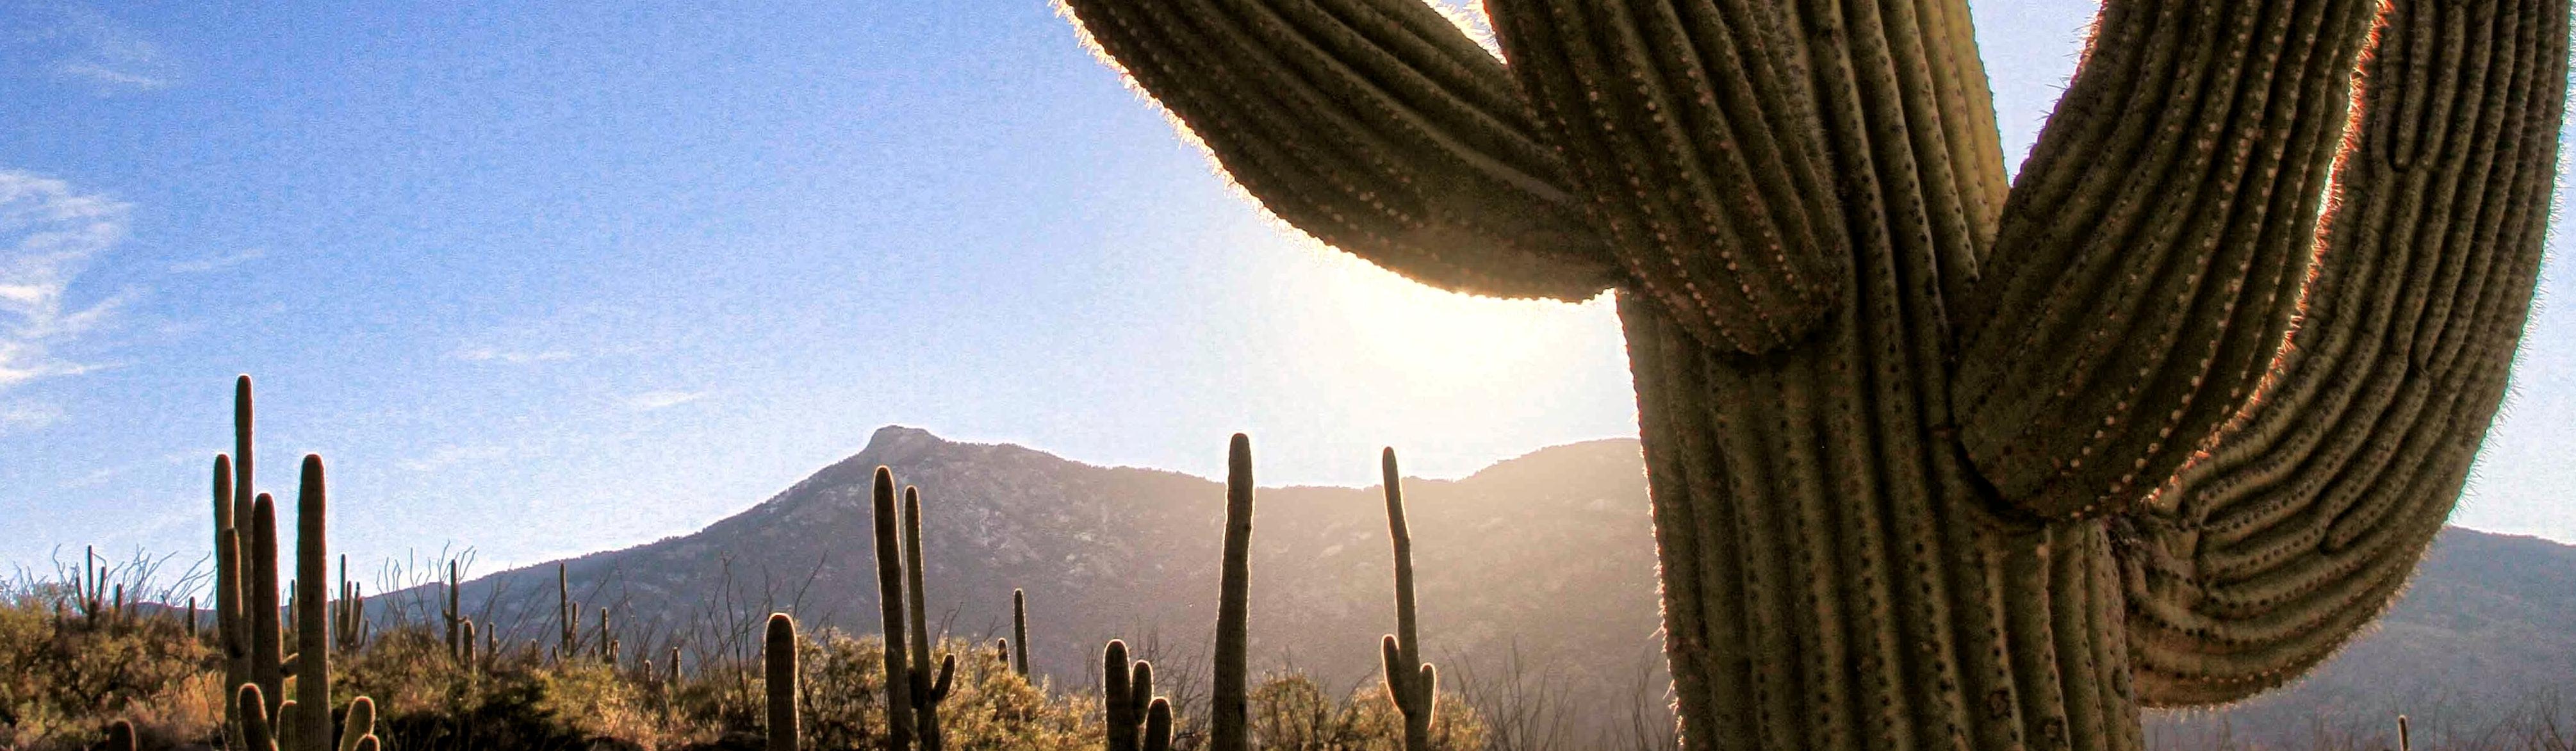 Image of Saguaro and sun